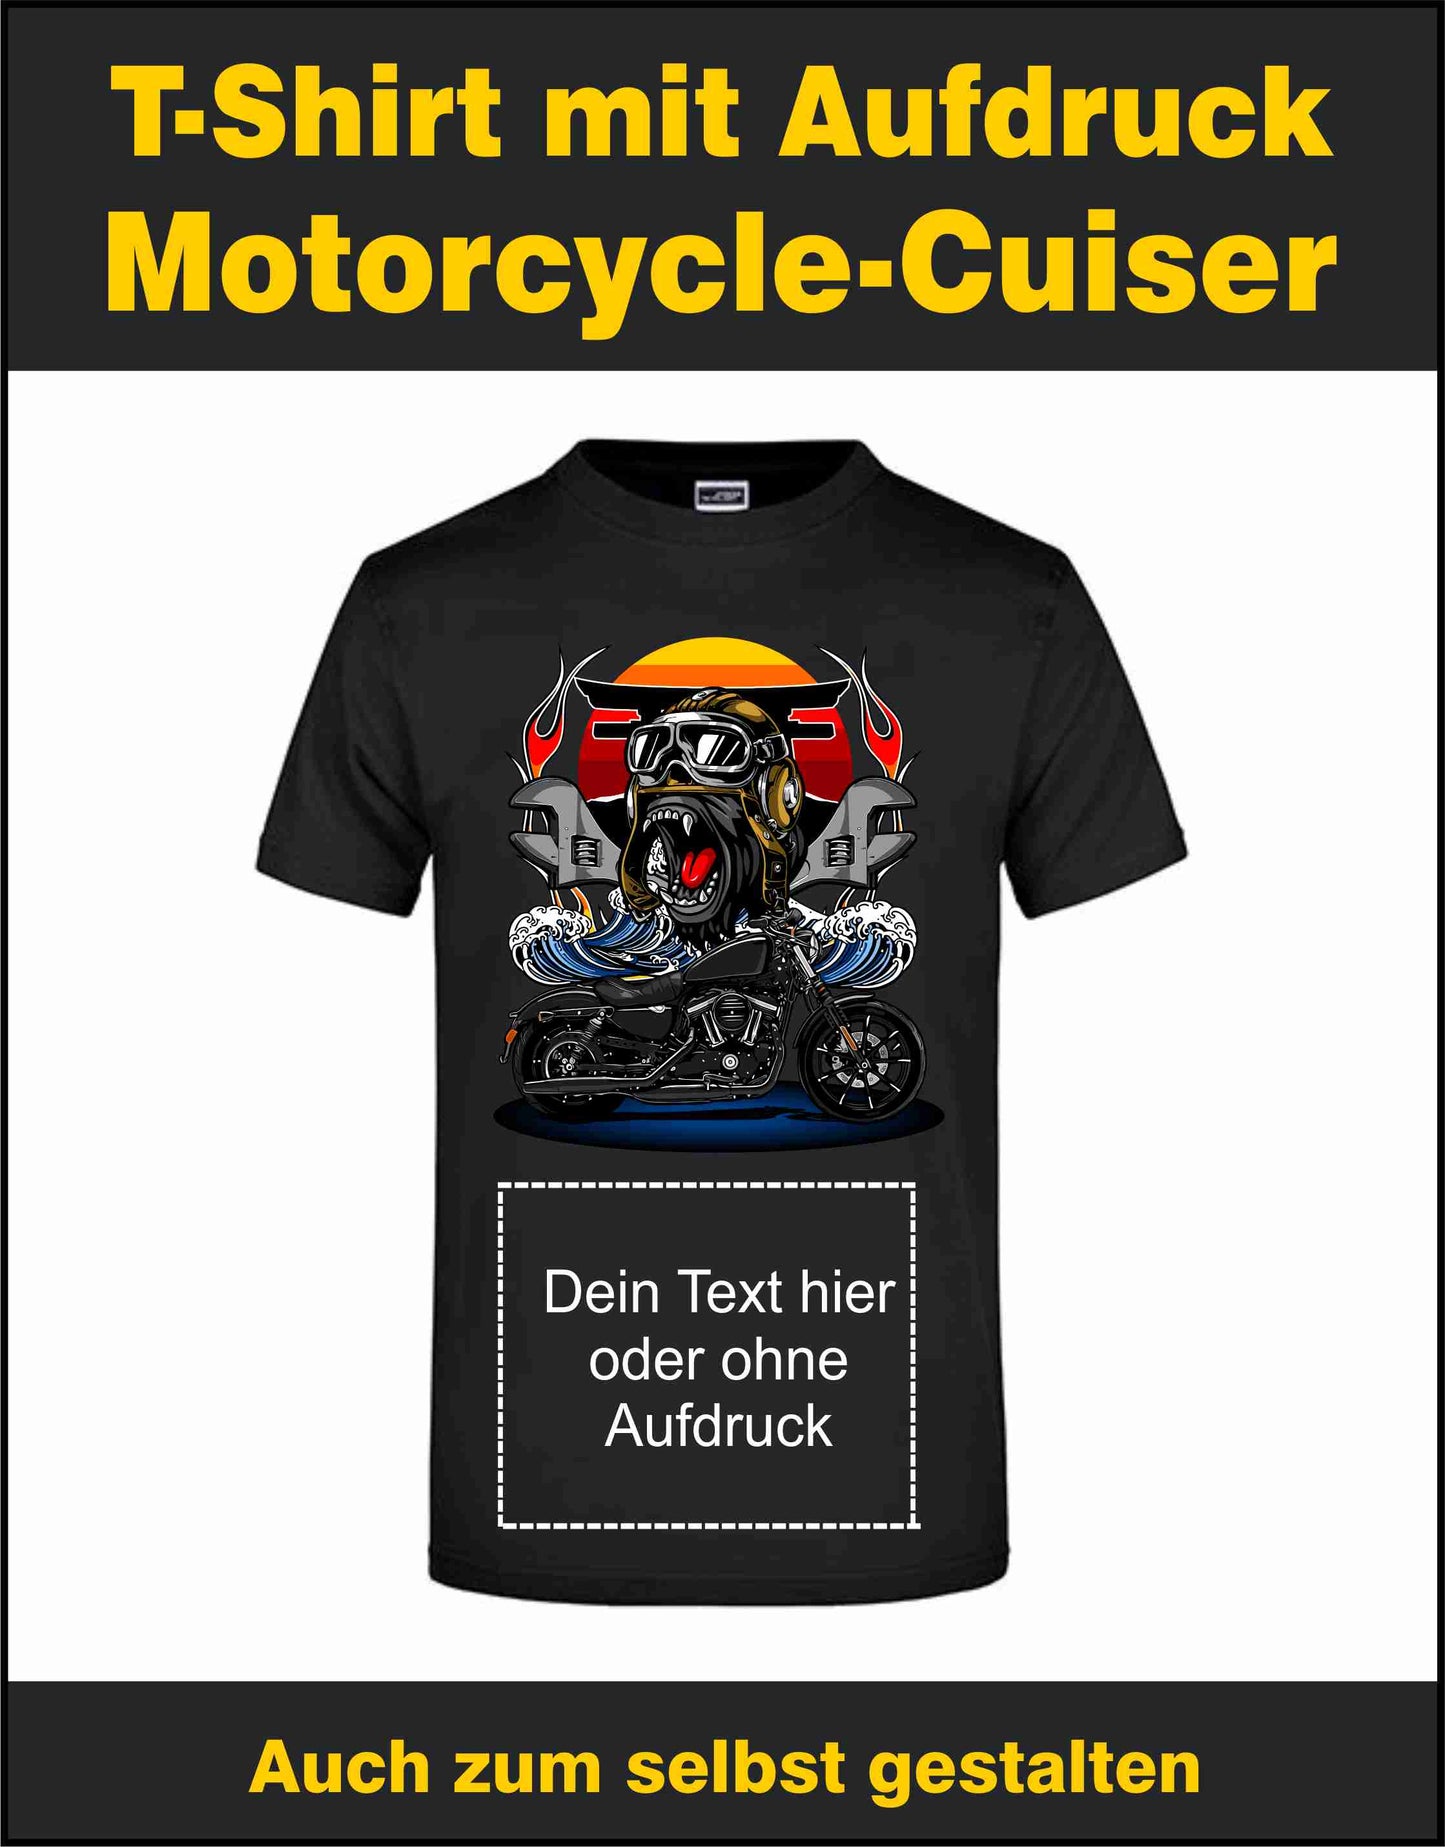 Biker Motorrad T-Shirt auch zum selbst gestalten bei tex-druck.de